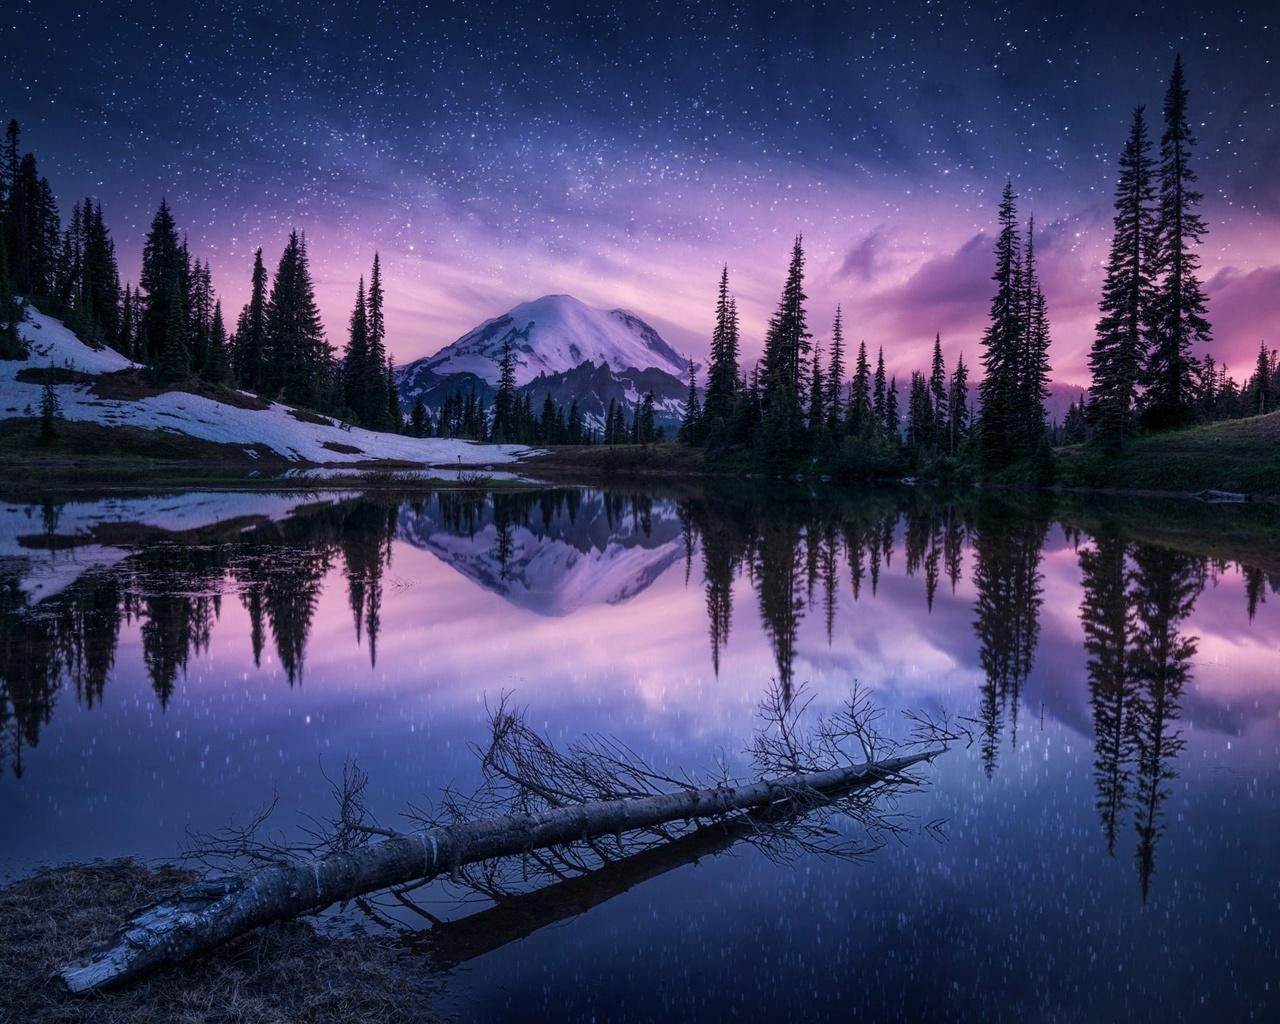 Lake Nature Night Reflection 1280x1024 Resolution HD 4k